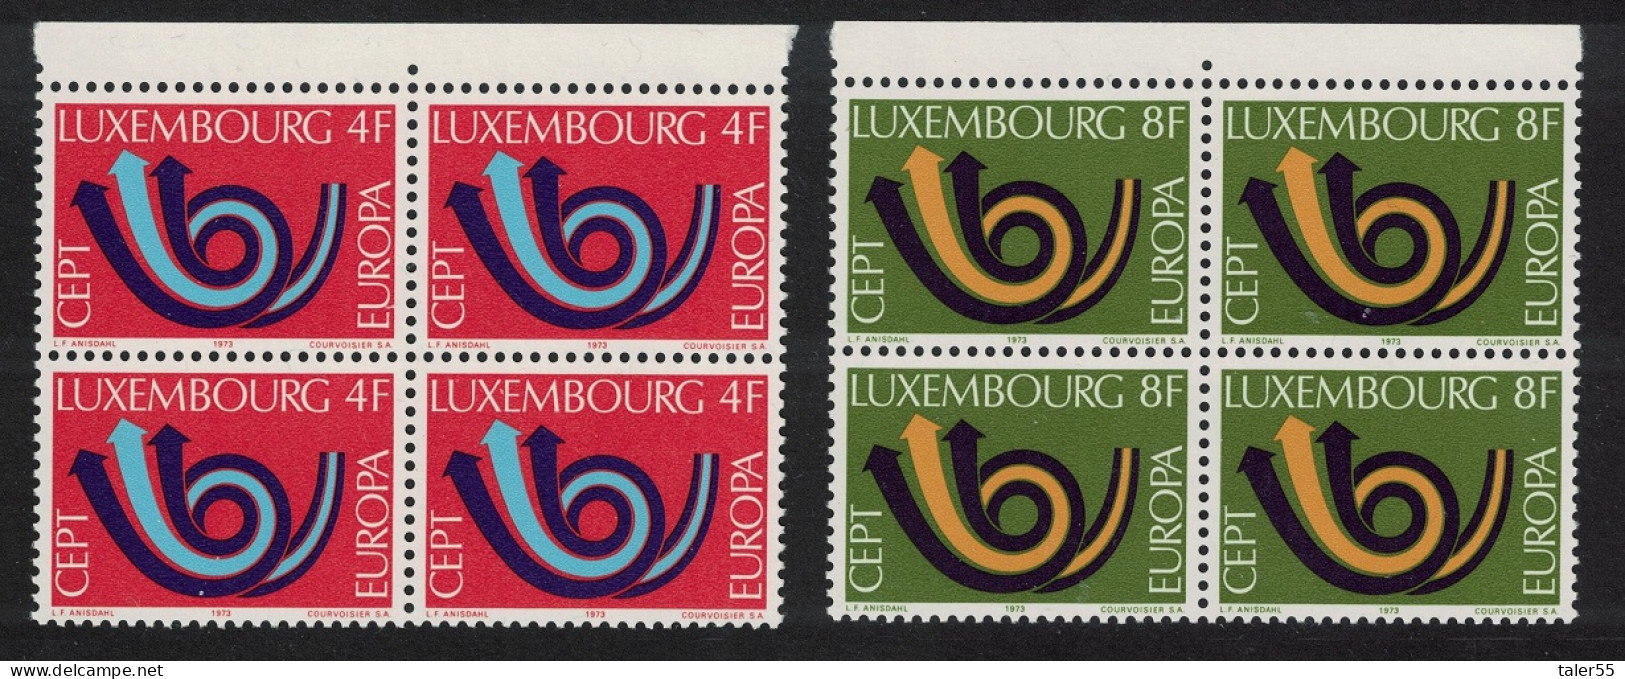 Luxembourg Post Horn Europa 2v Blocks Of 4 1973 MNH SG#906-907 MI#862-863 - Ongebruikt